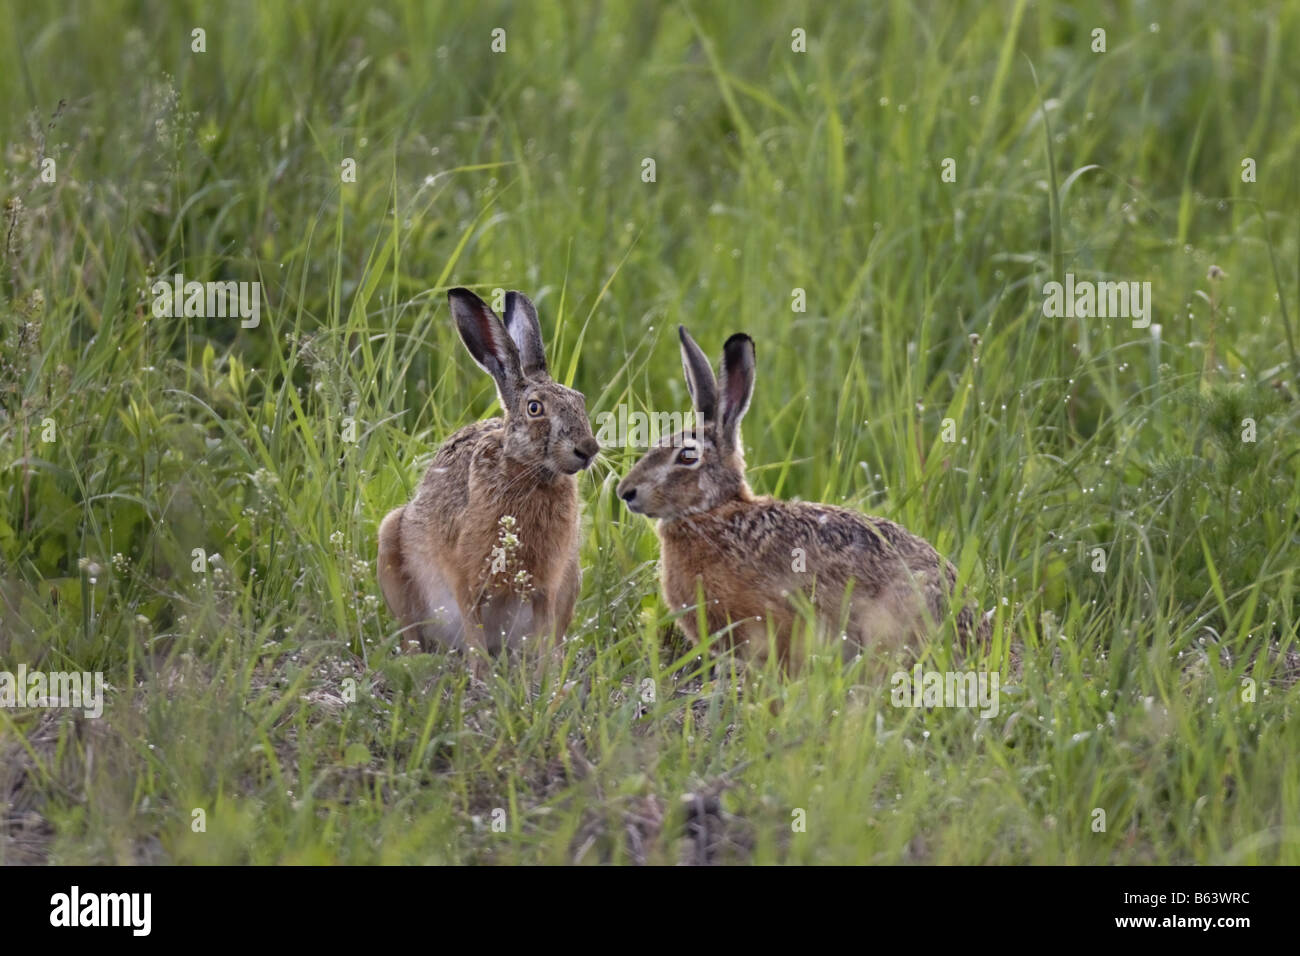 Hase Feldhase lepus europaeus hare rabbit Stock Photo